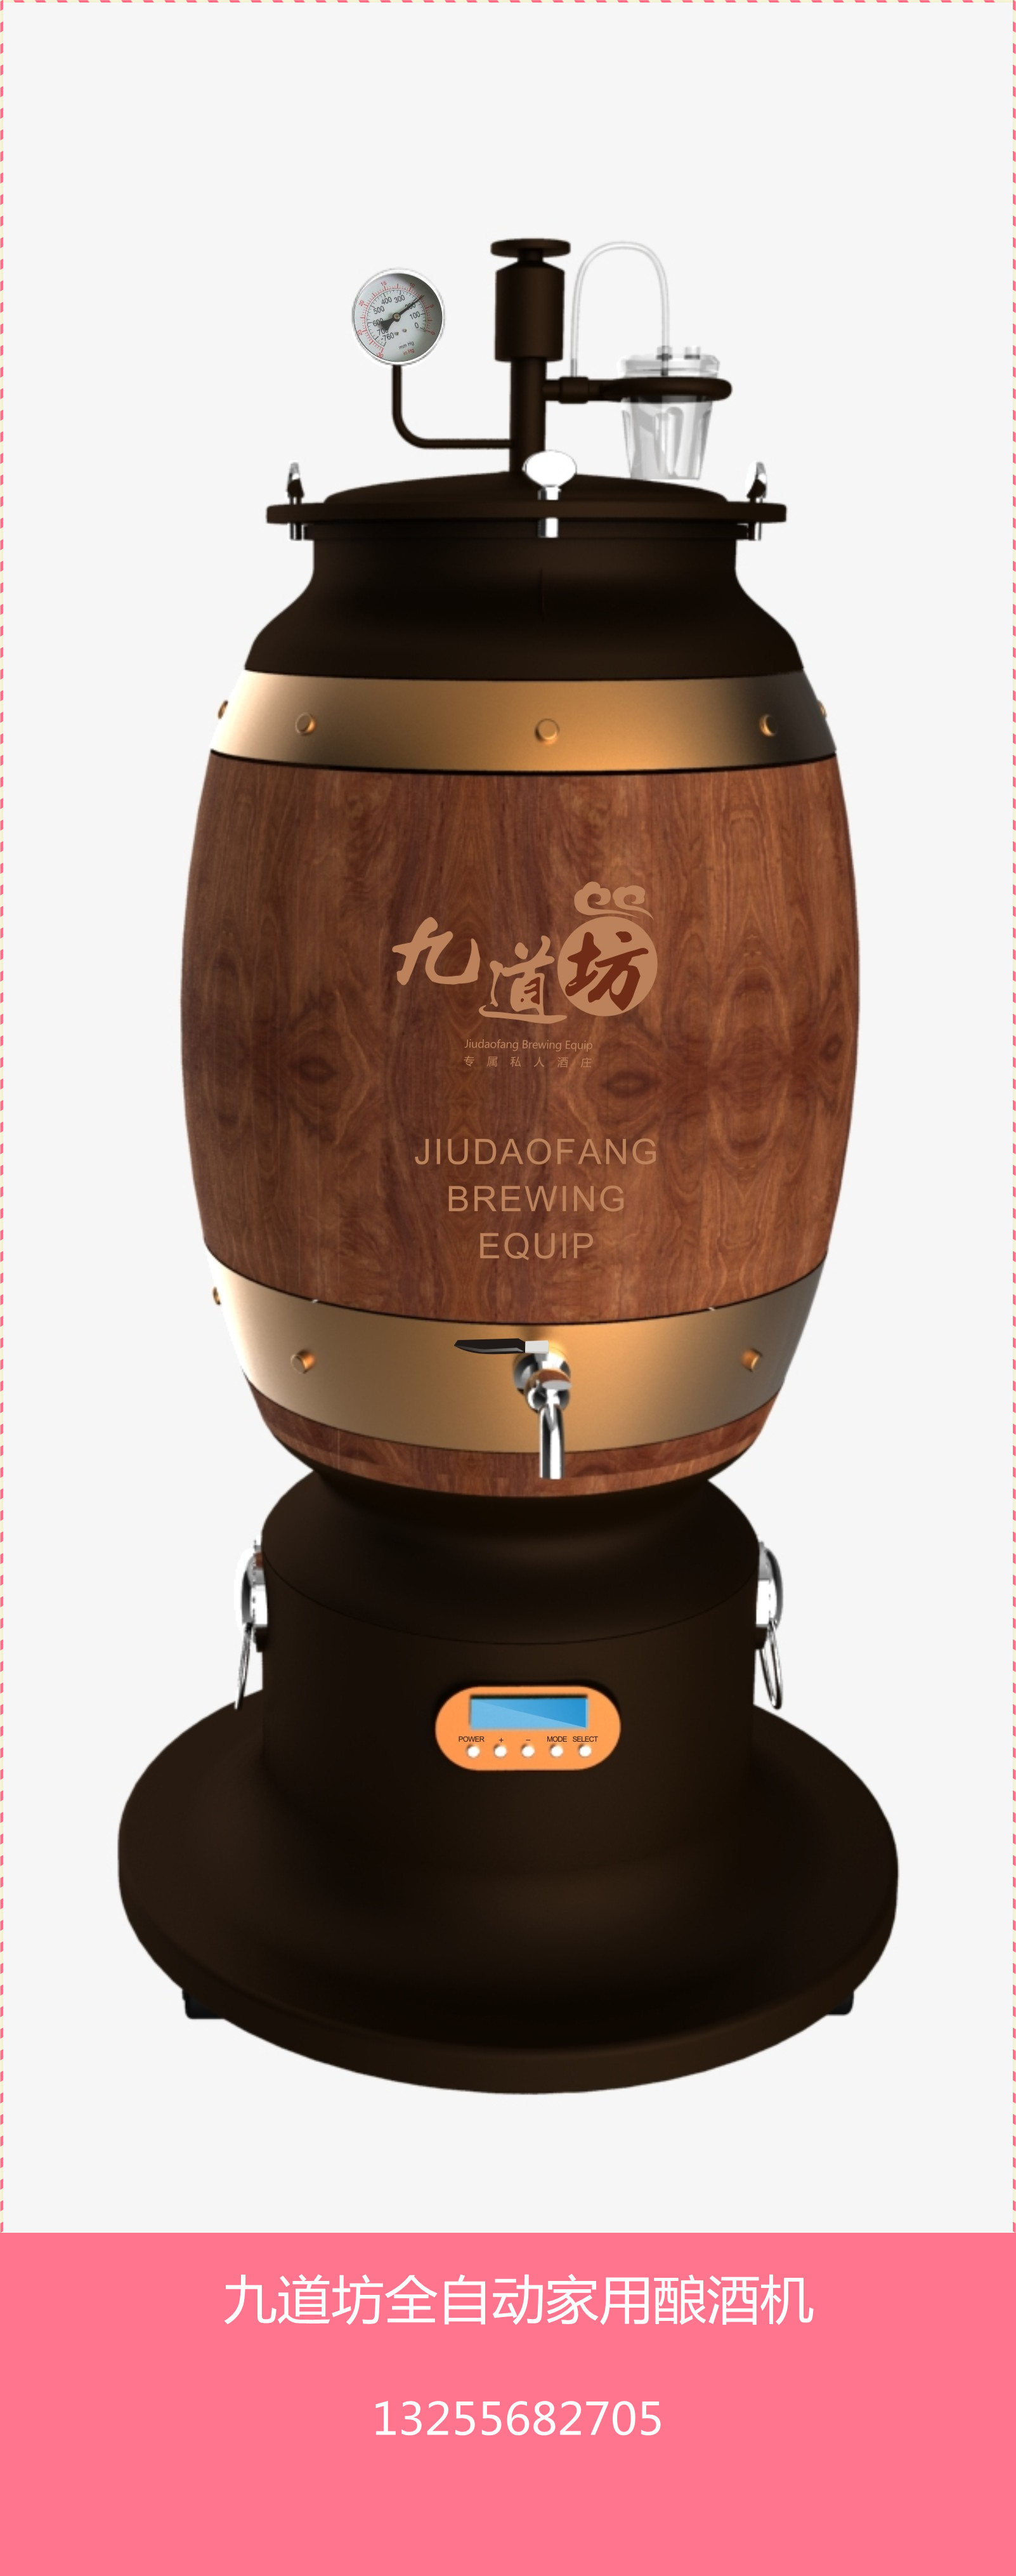 供应山东九道坊全自动家用酿酒机加盟|2015中国最具特色的项目全自动家用酿酒机